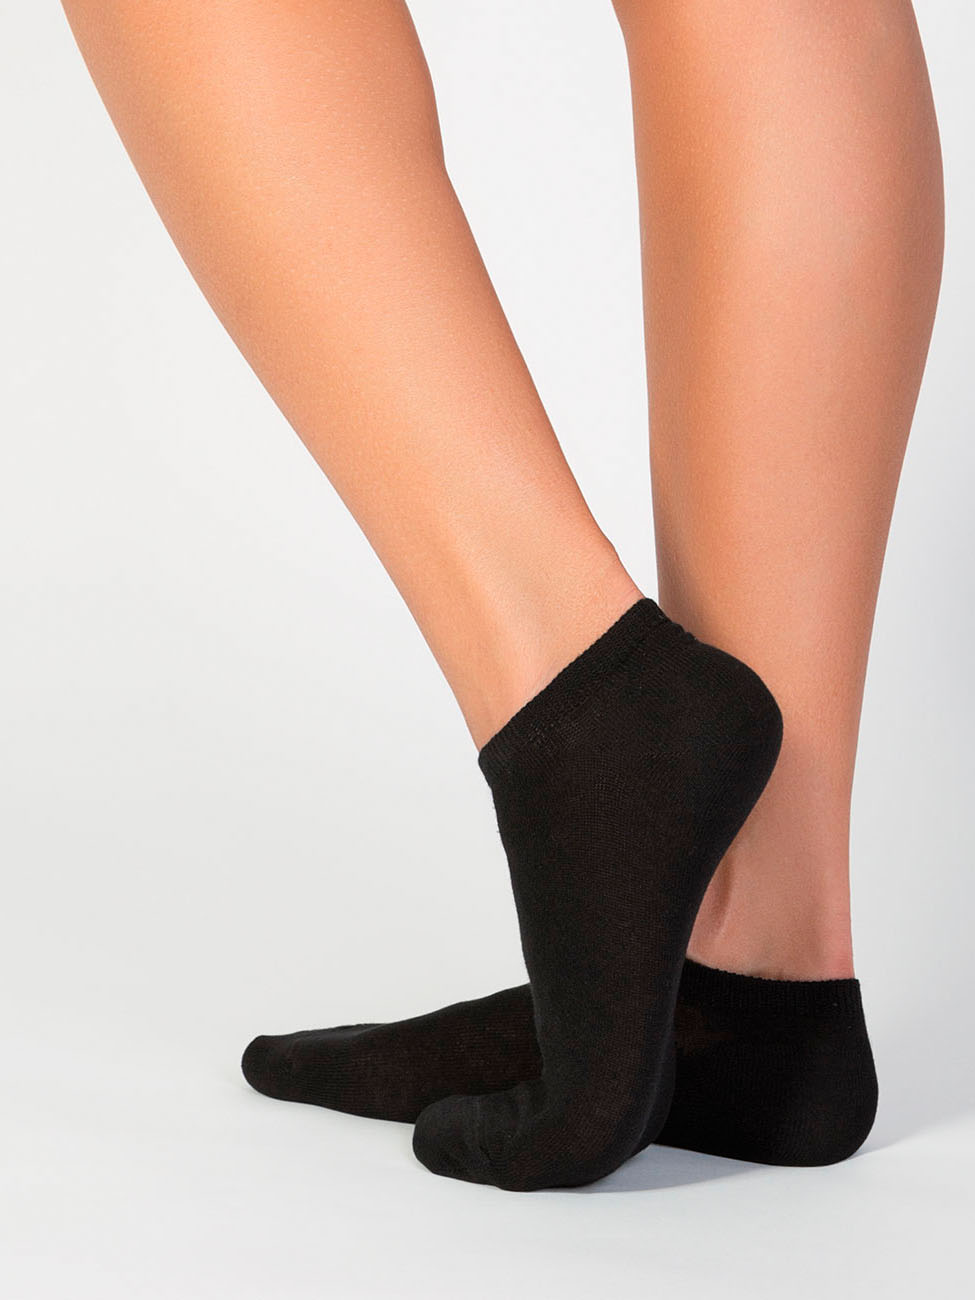 Комплект носков женских INCANTO COLLANT IBD731005 черных 36-38, 5 пар